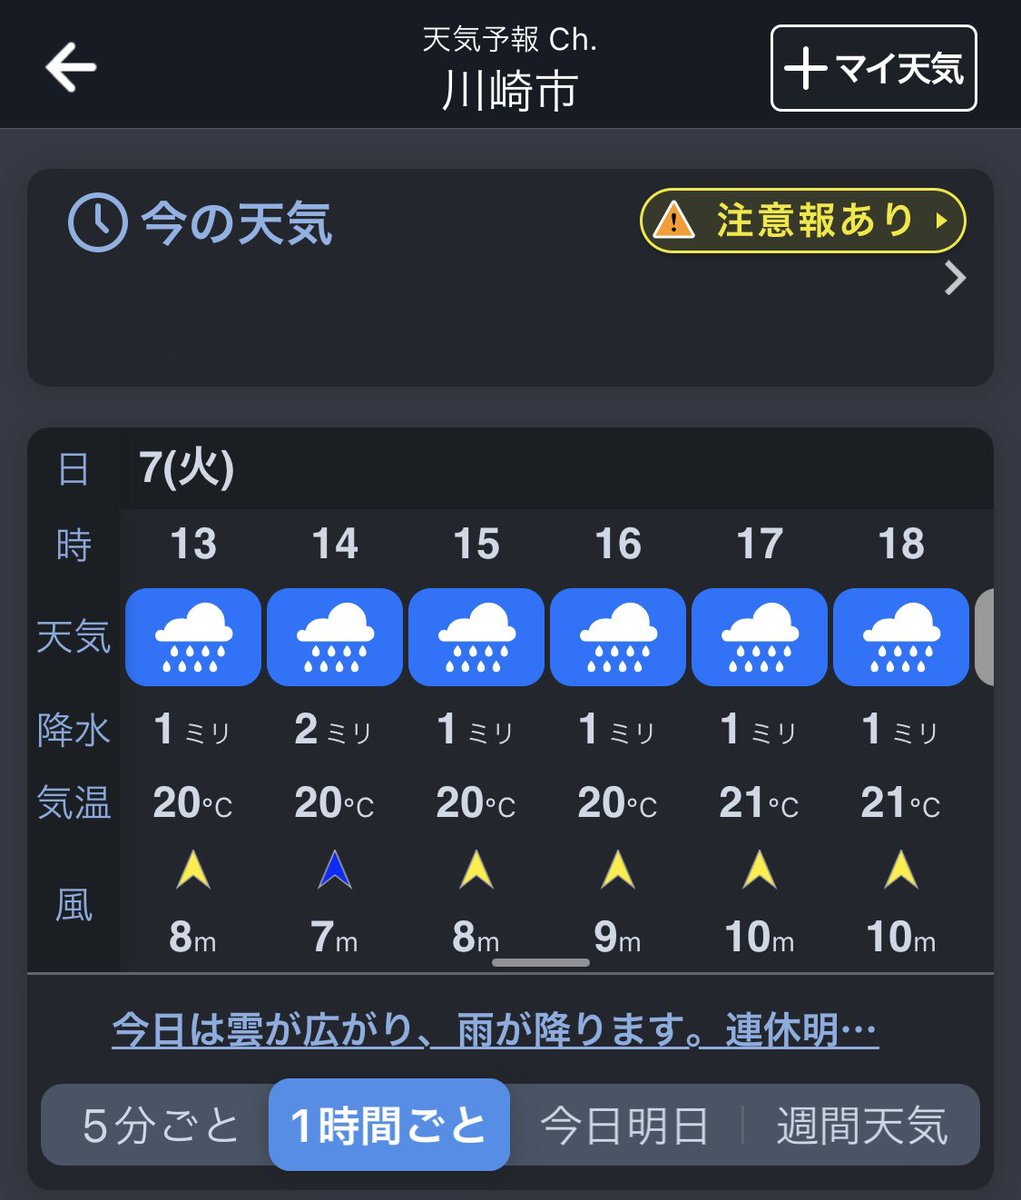 今日の川崎は雨よりも傘さしても意味ないんじゃないかってくらい風が強くて会場着いた頃にはズブズブになってそう☔️